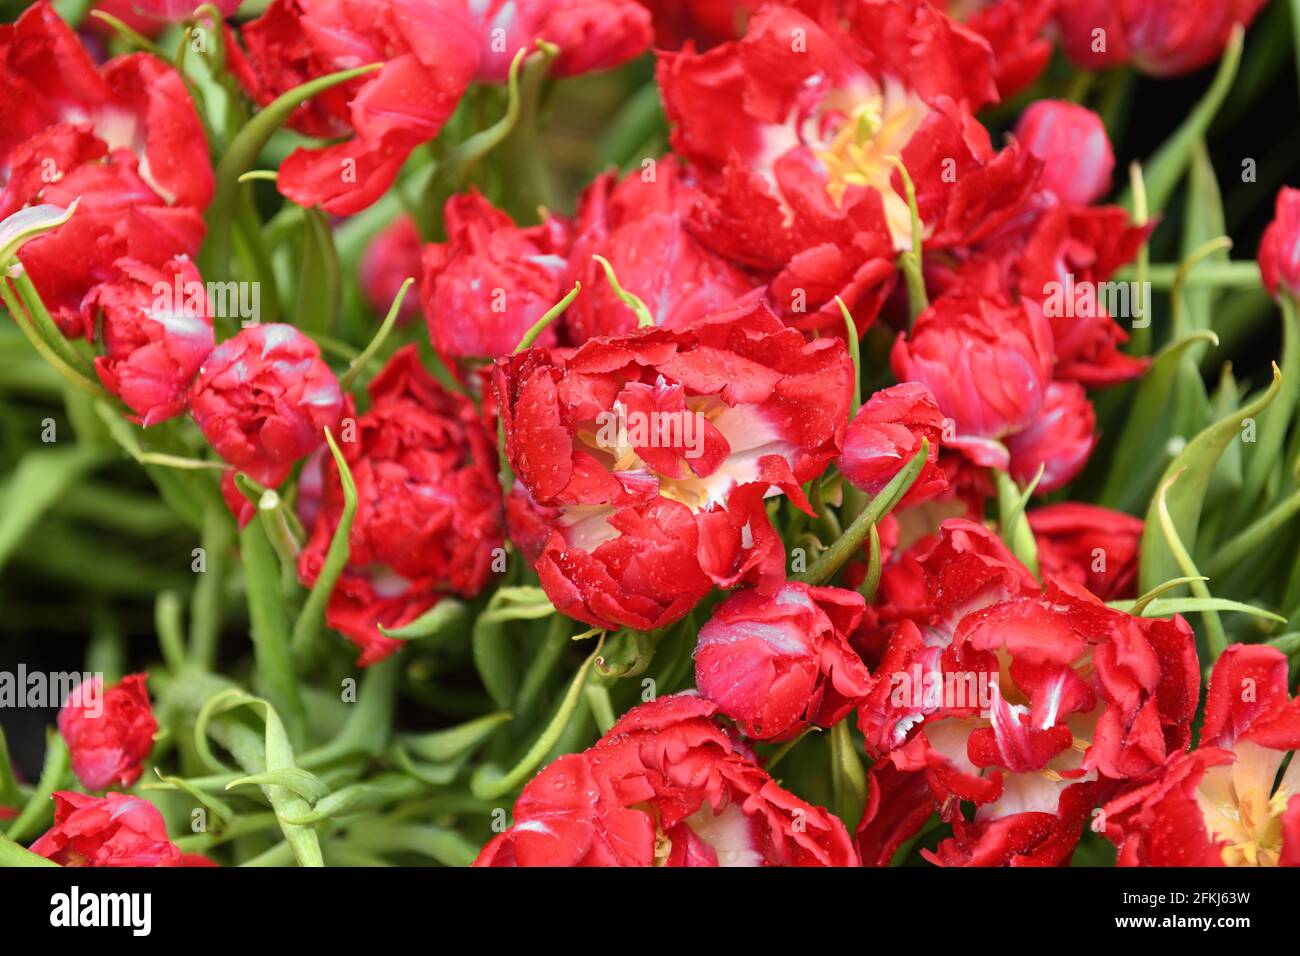 Tulip First Price, einzigartige schillernde riesige Pfingstrose-ähnliche Blüten in leuchtendem Rot, mit Wassertropfen Stockfoto